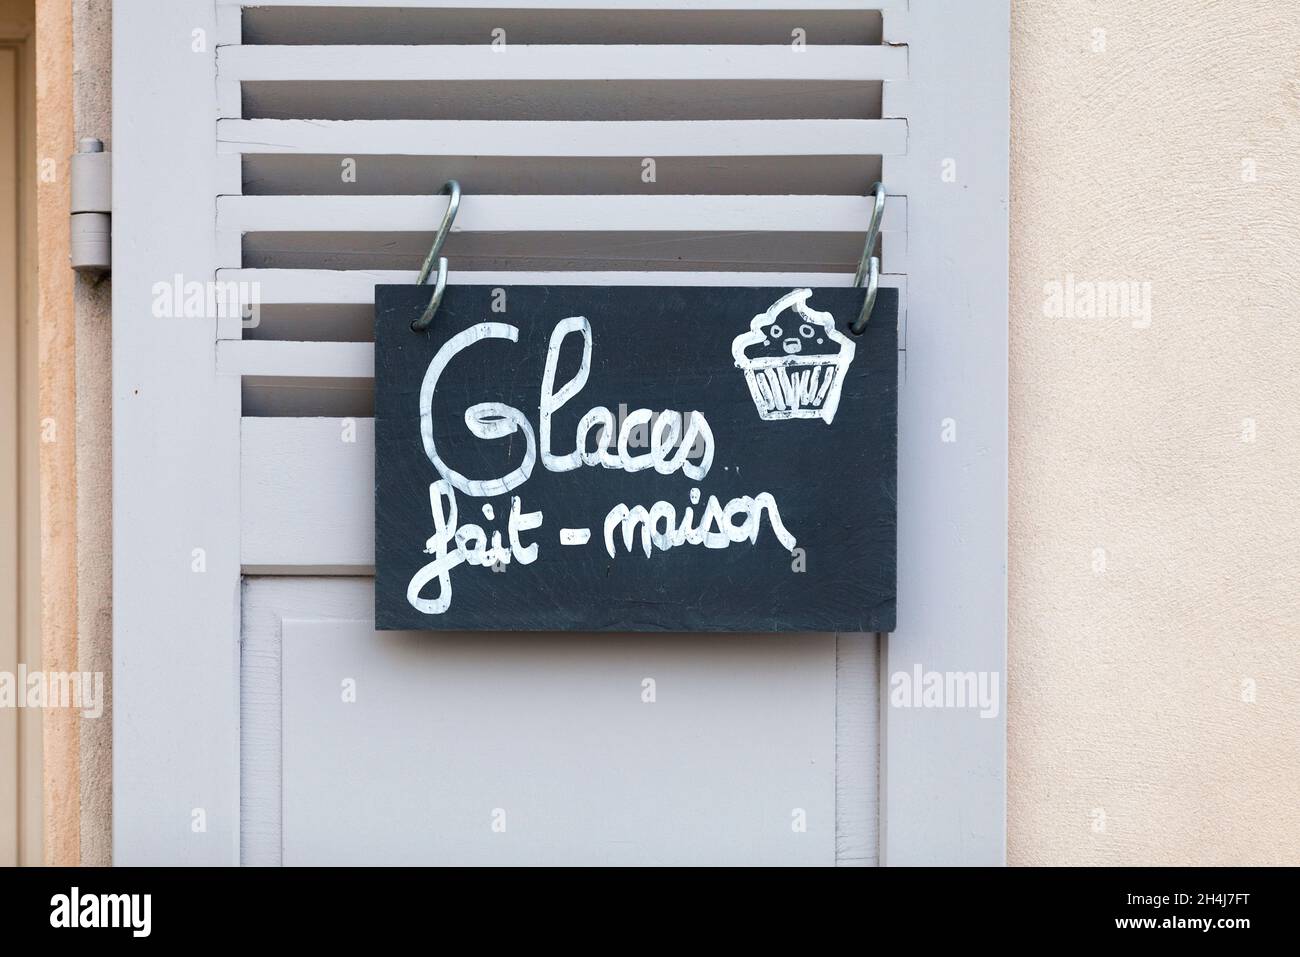 Nahaufnahme eines Schiefer-Schreibens, der an einem Fensterladen befestigt ist und auf Französisch sagt: Glaces fait maison - was auf Englisch bedeutet - hausgemachtes Eis. Stockfoto